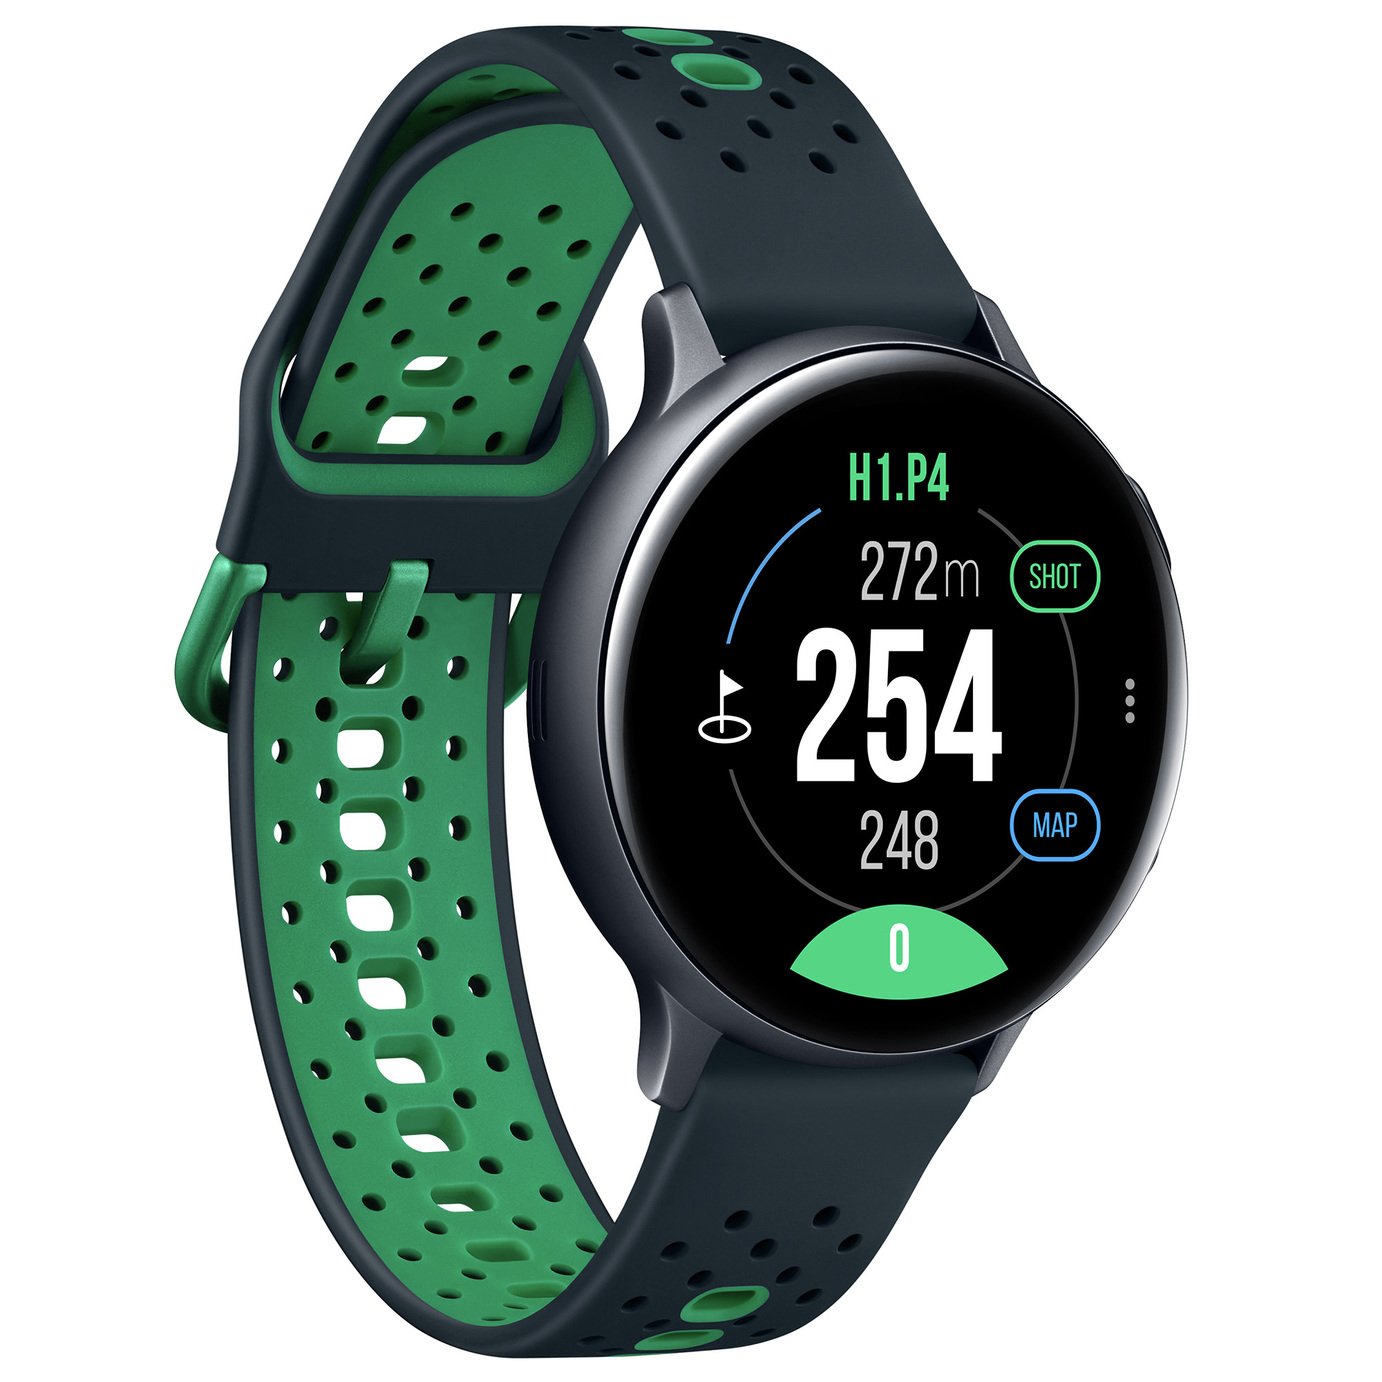 Samsung Galaxy Active2 Golf 44mm Smart Watch - Black